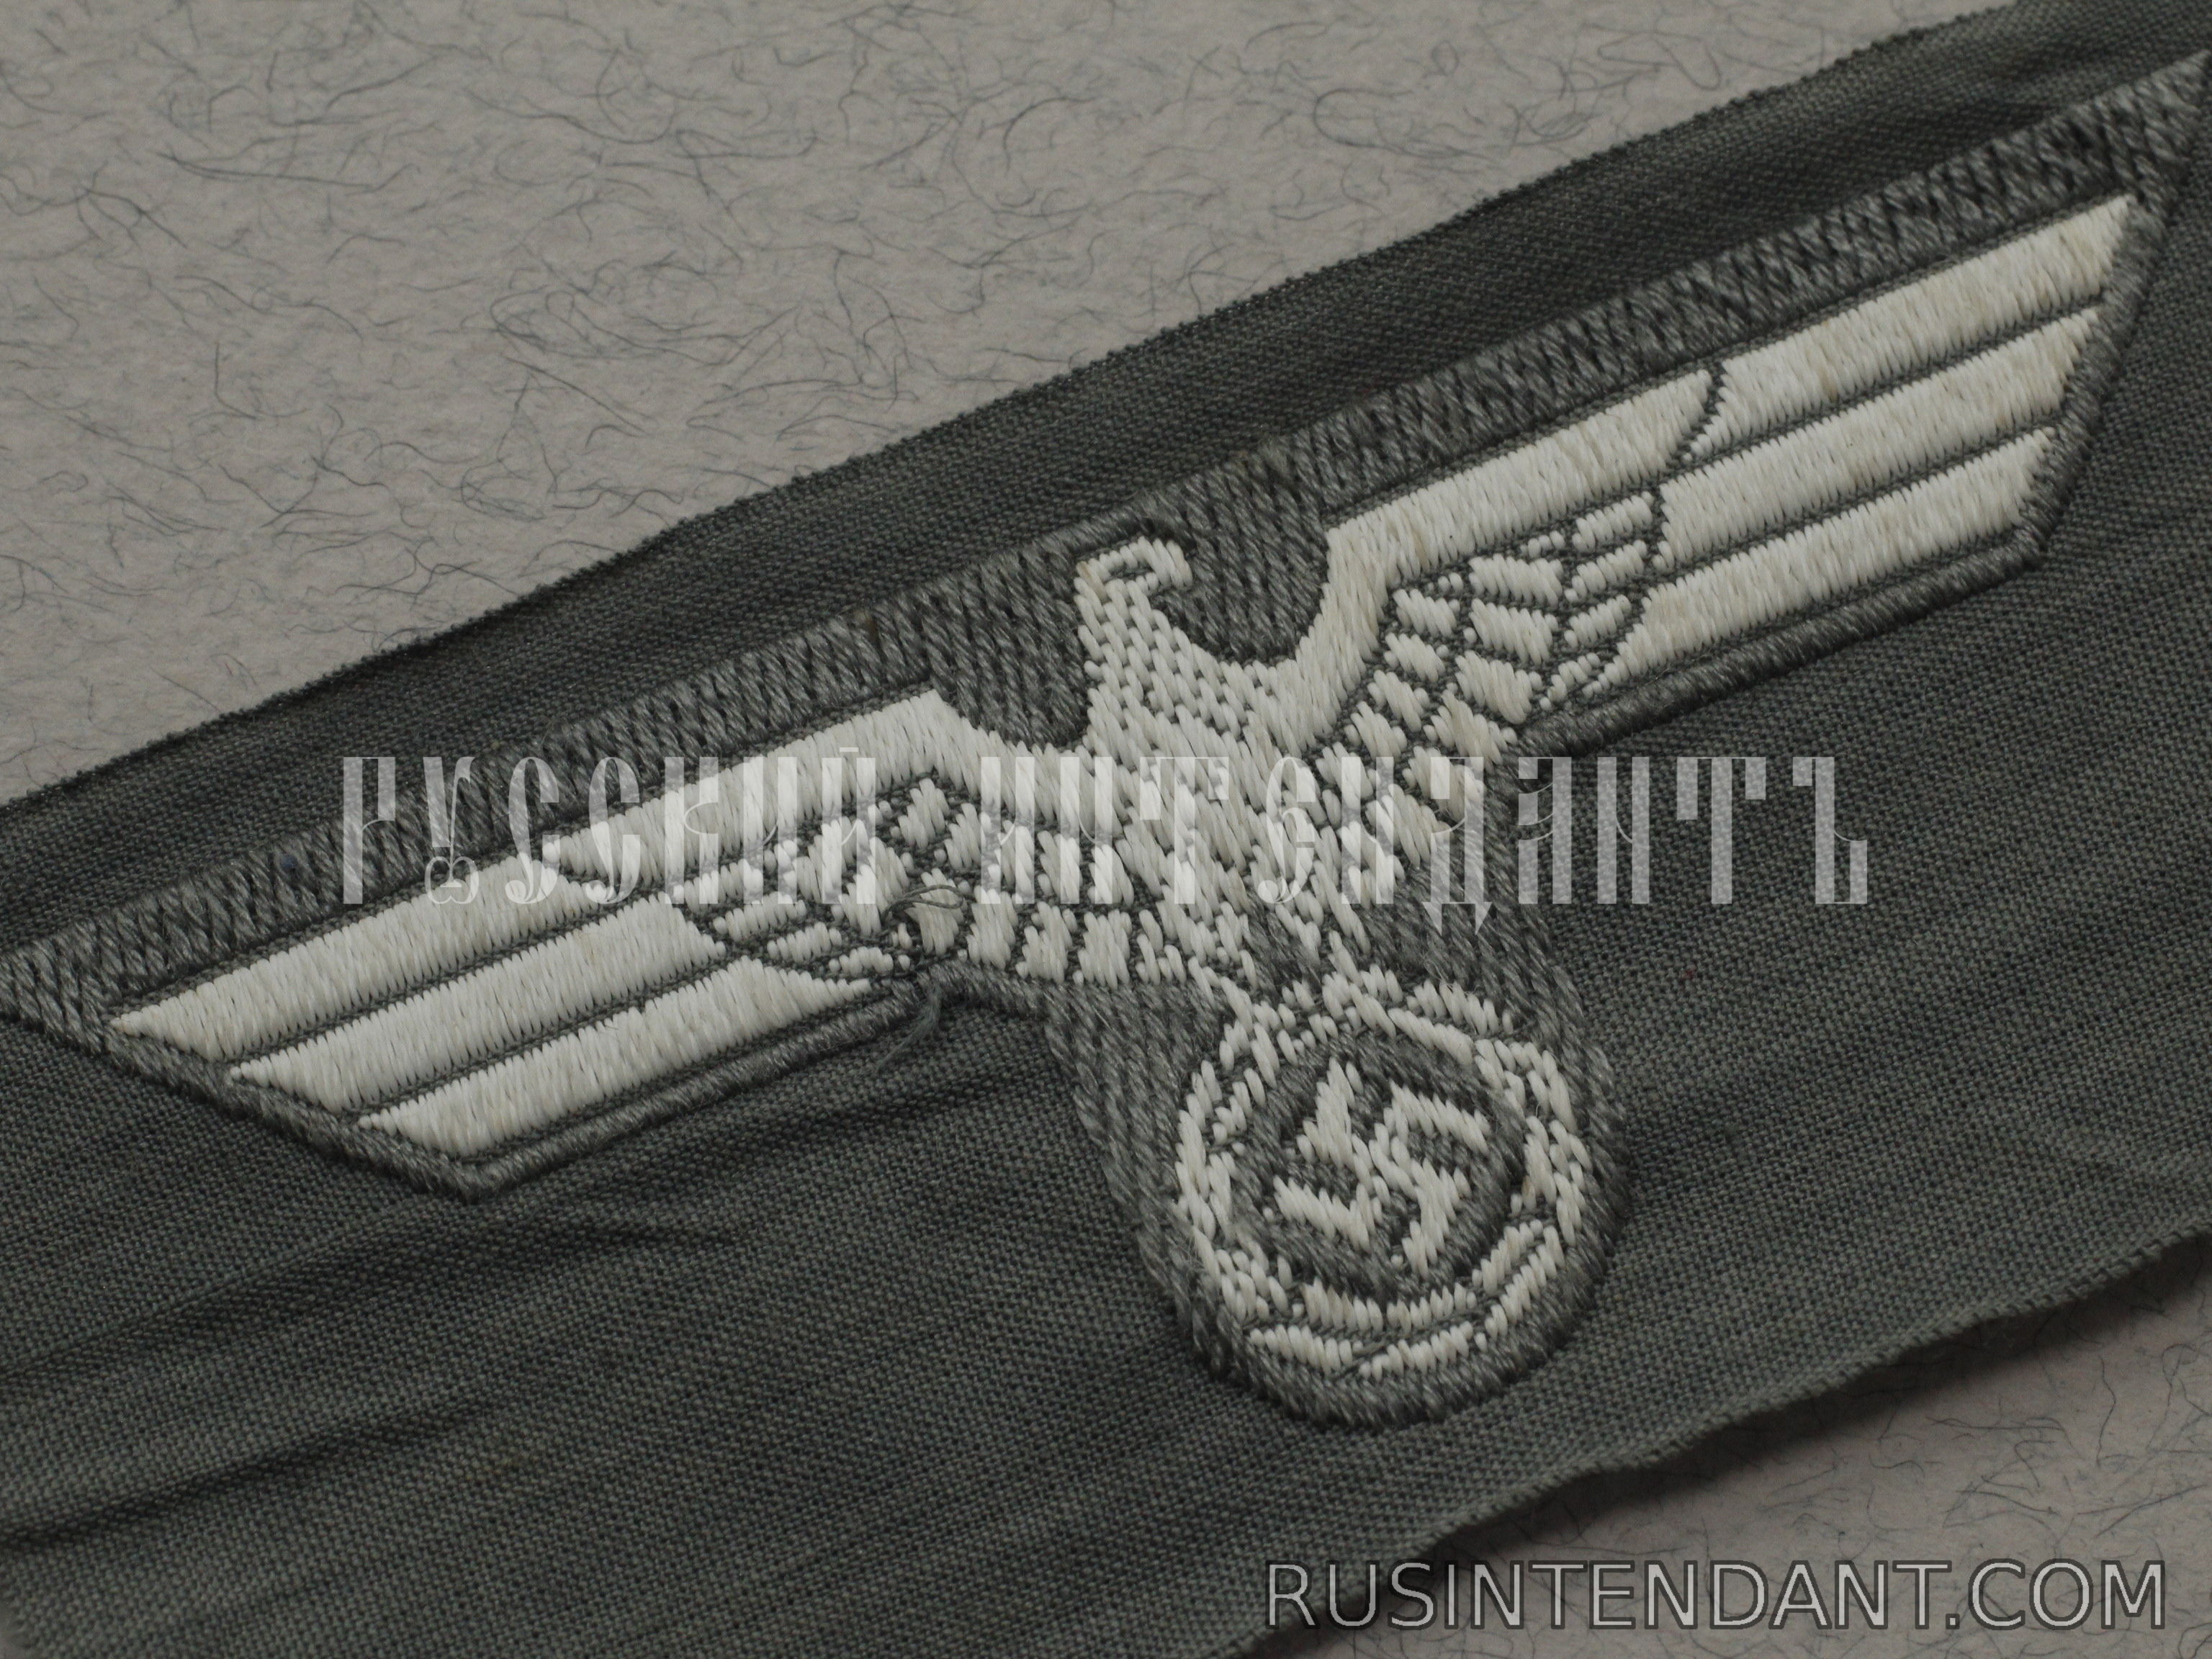 Фото 3: Эмблема на головные уборы Вермахта 